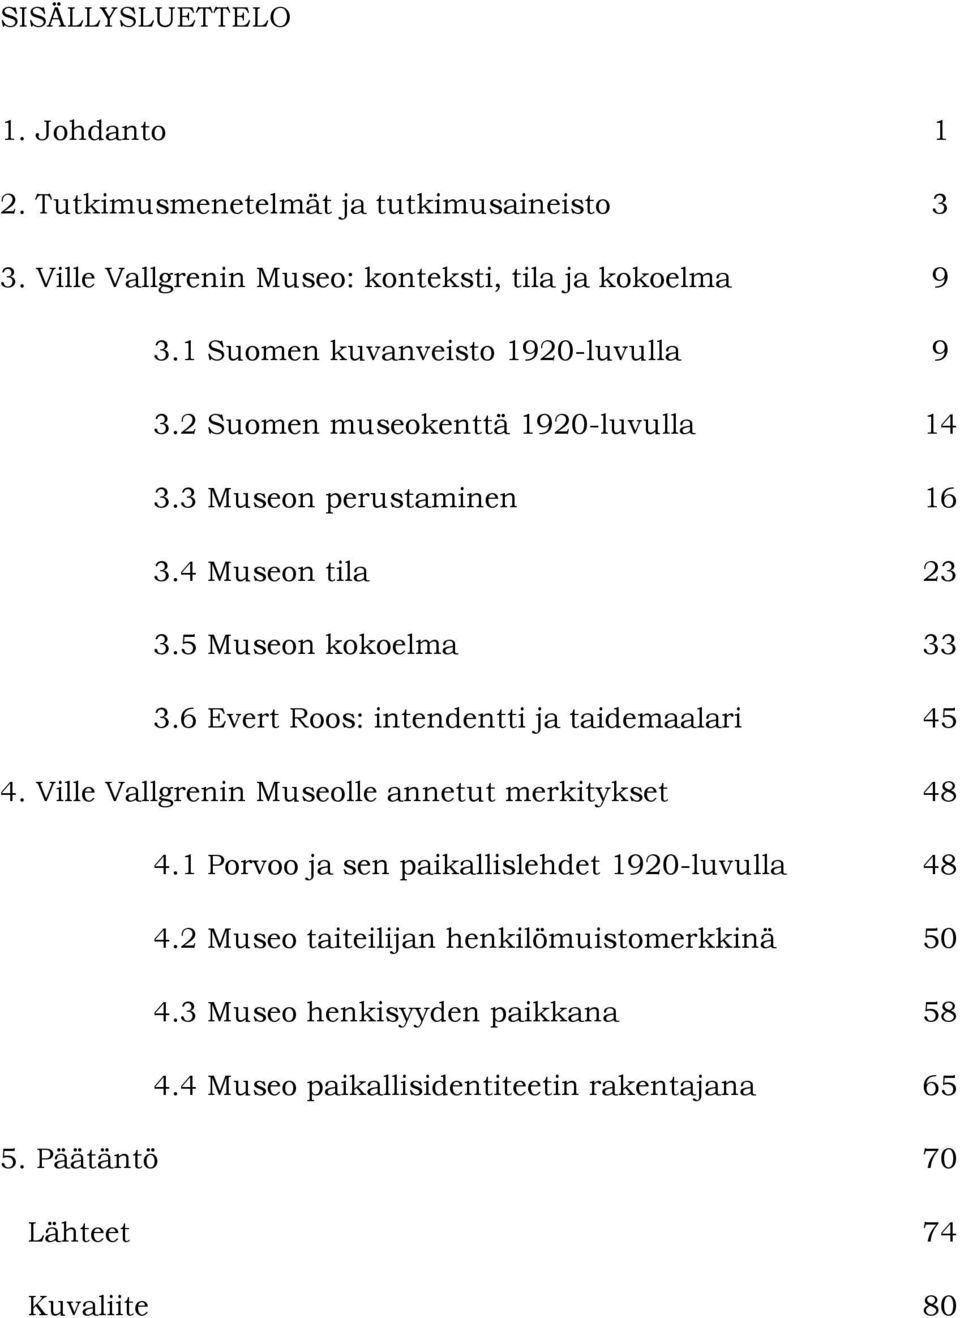 6 Evert Roos: intendentti ja taidemaalari 45 4. Ville Vallgrenin Museolle annetut merkitykset 48 4.1 Porvoo ja sen paikallislehdet 1920-luvulla 48 4.